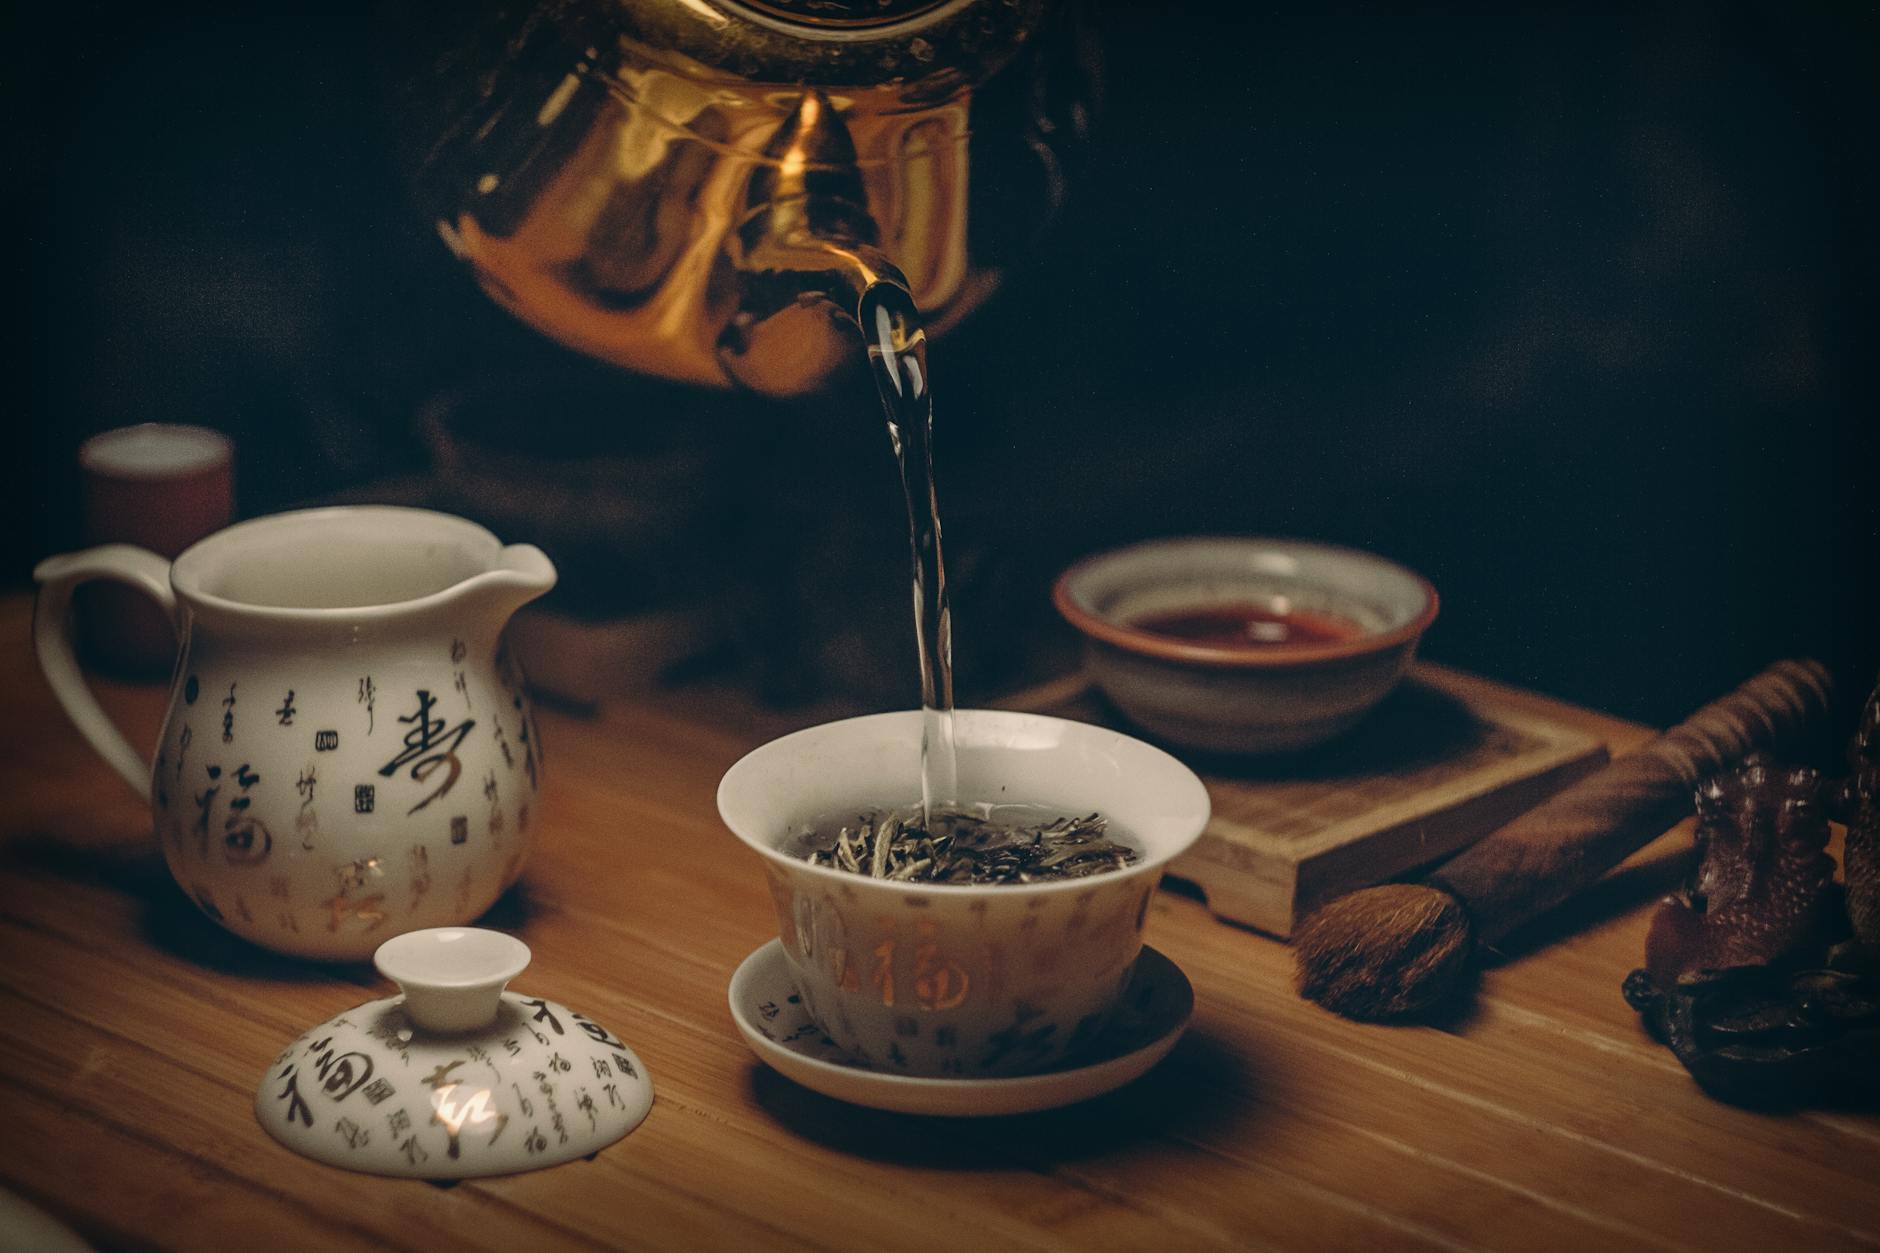 7 Benefits Of Green Tea